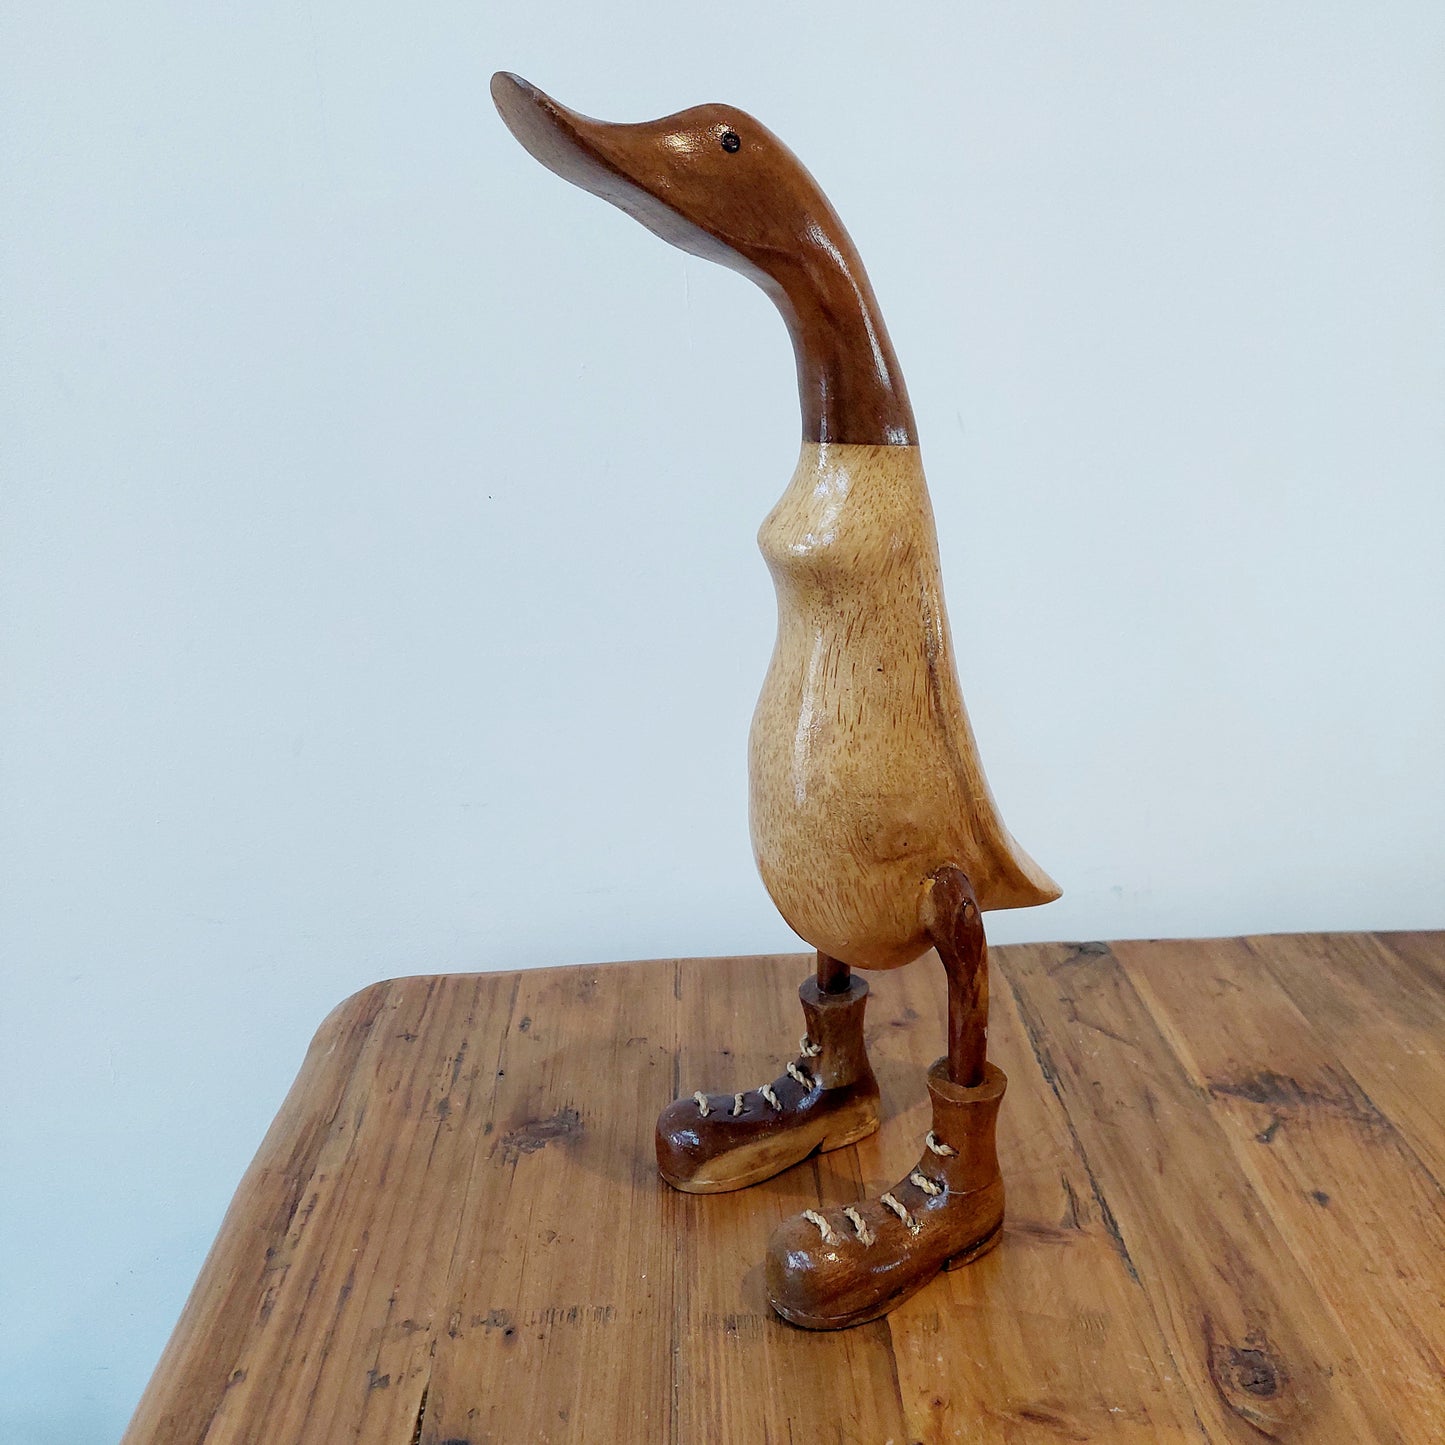 Wooden Ducks in Boots Wellies